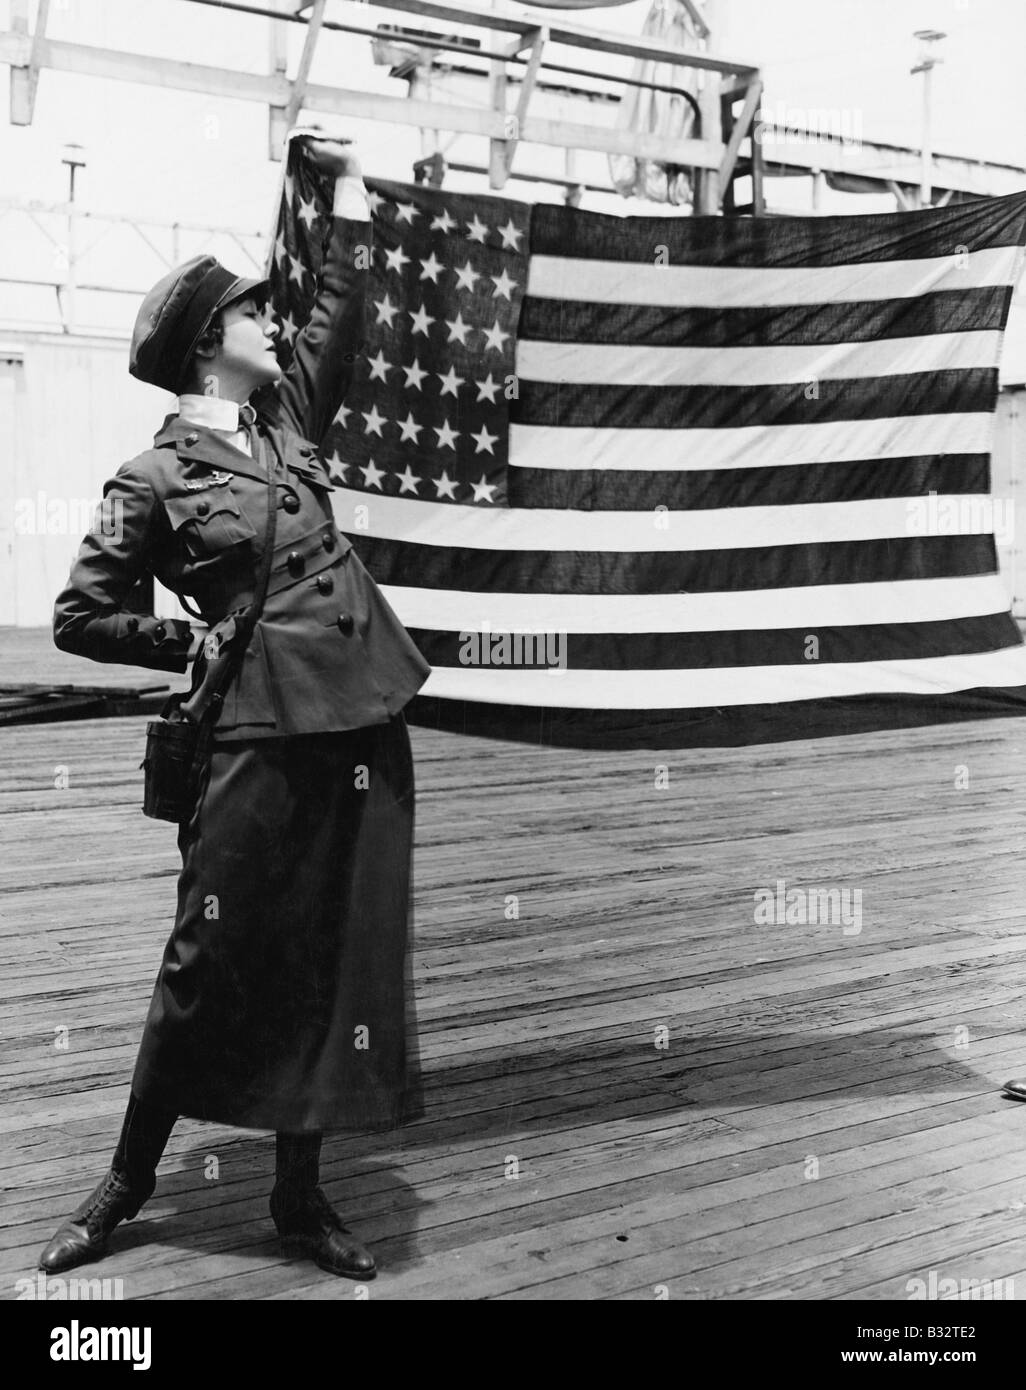 Jeune femme en uniforme militaire holding up drapeau Américain Banque D'Images